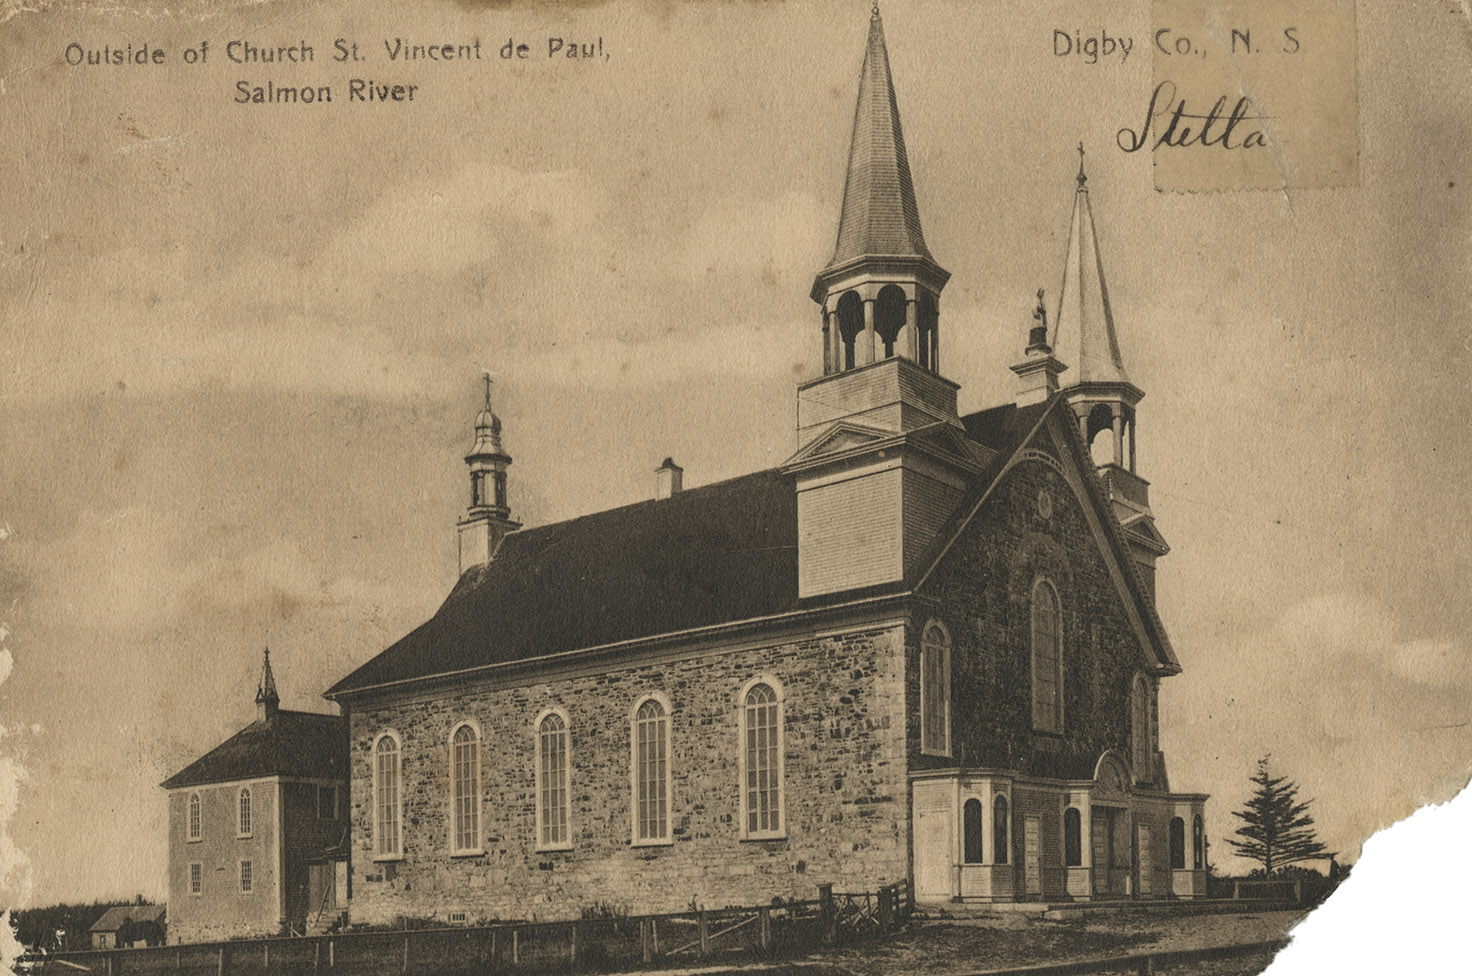 communityalbums - St. Vincent de Paul church, Salmon River